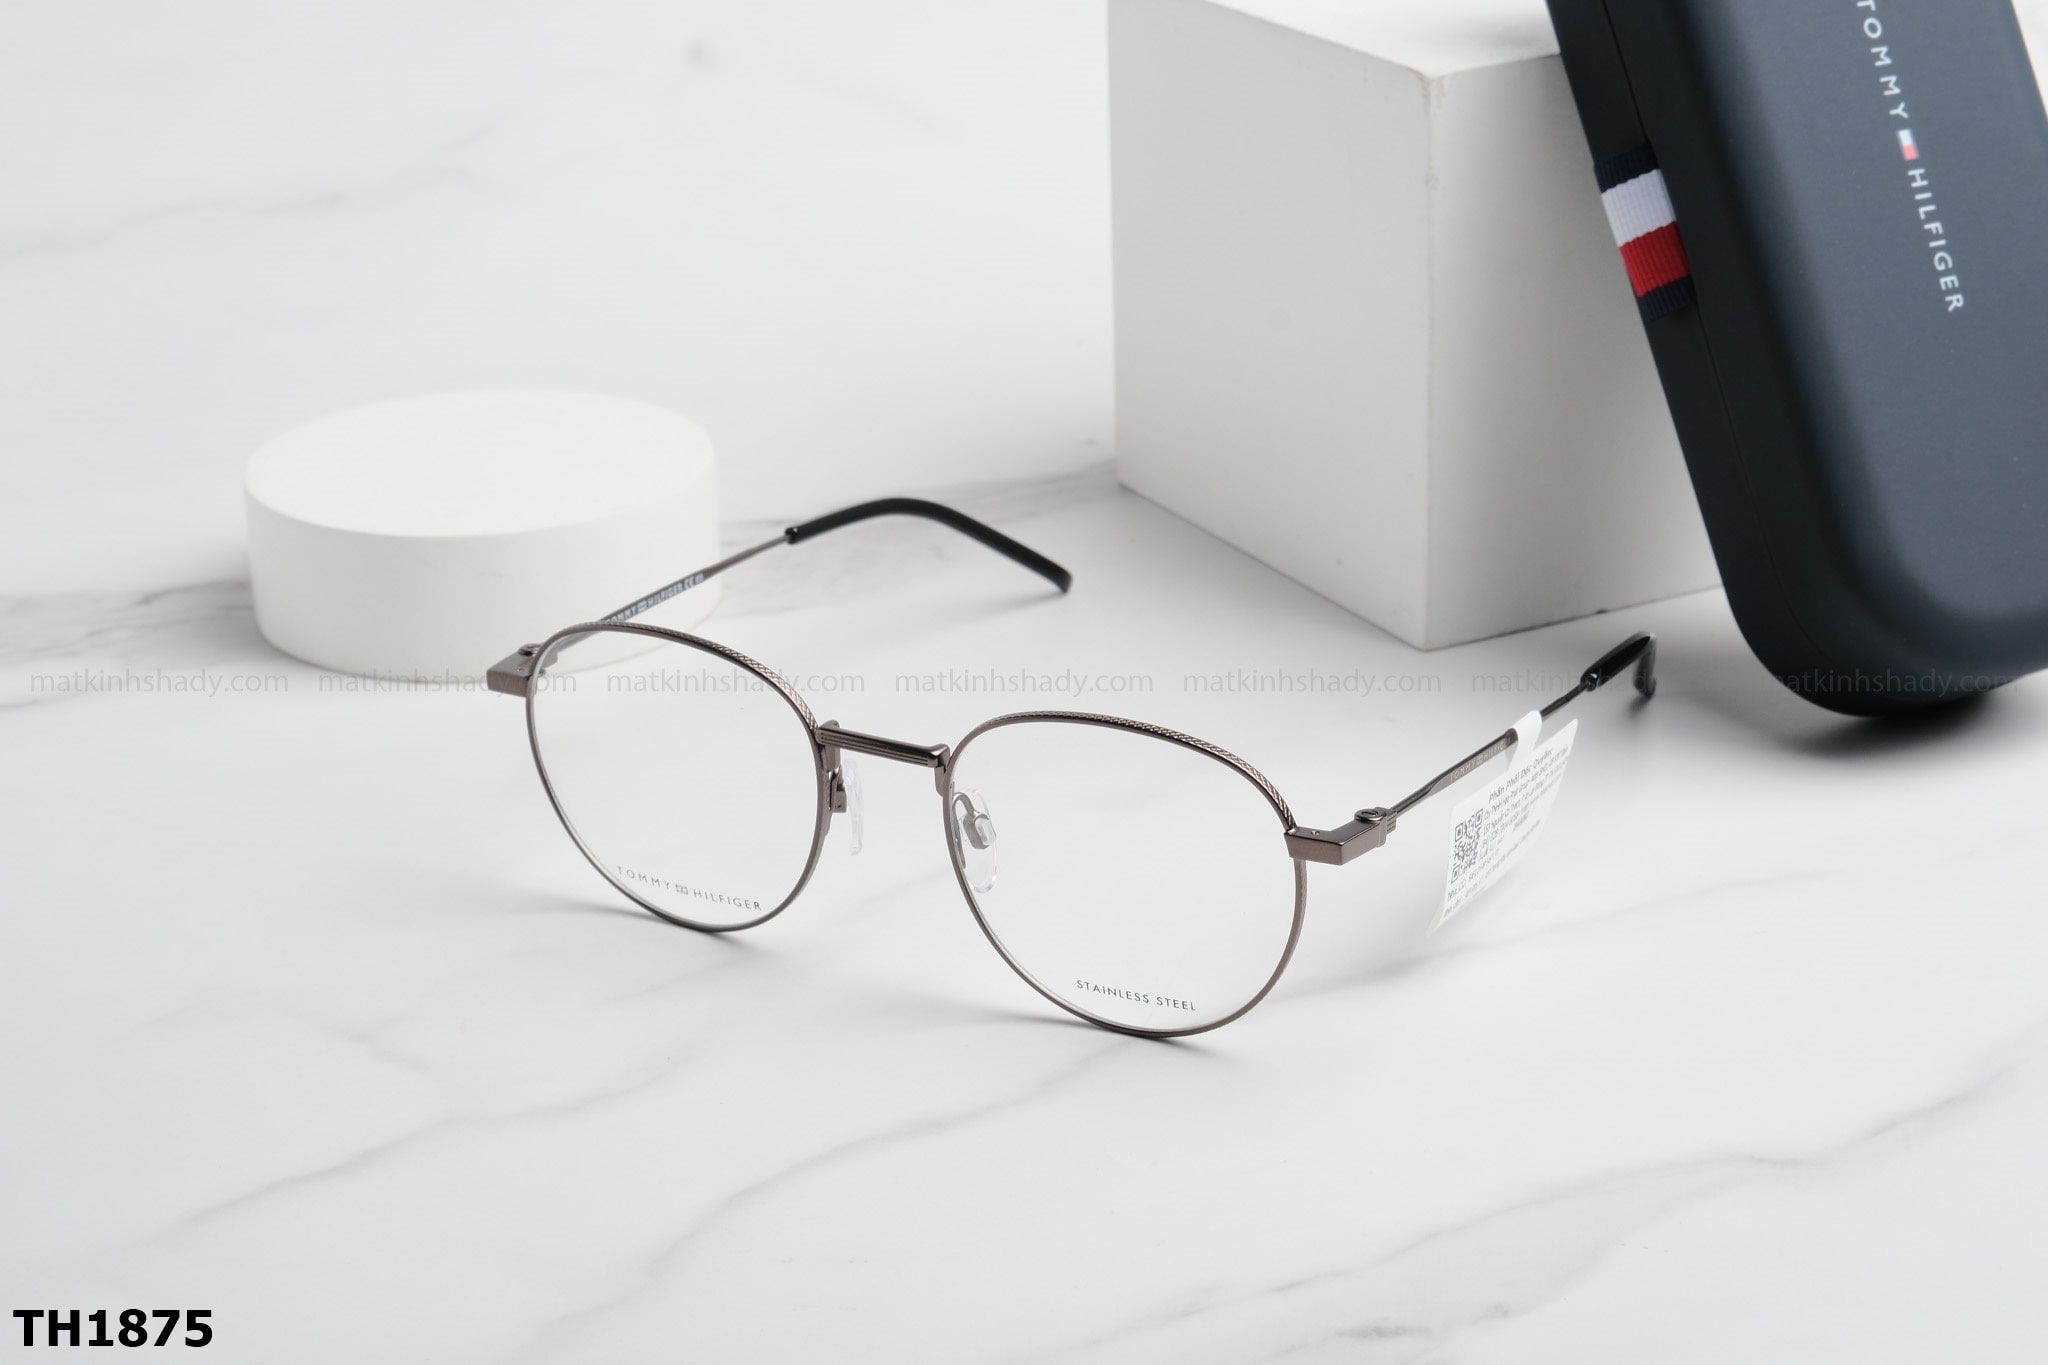  Tommy Hilfiger Eyewear - Glasses - TH1875 